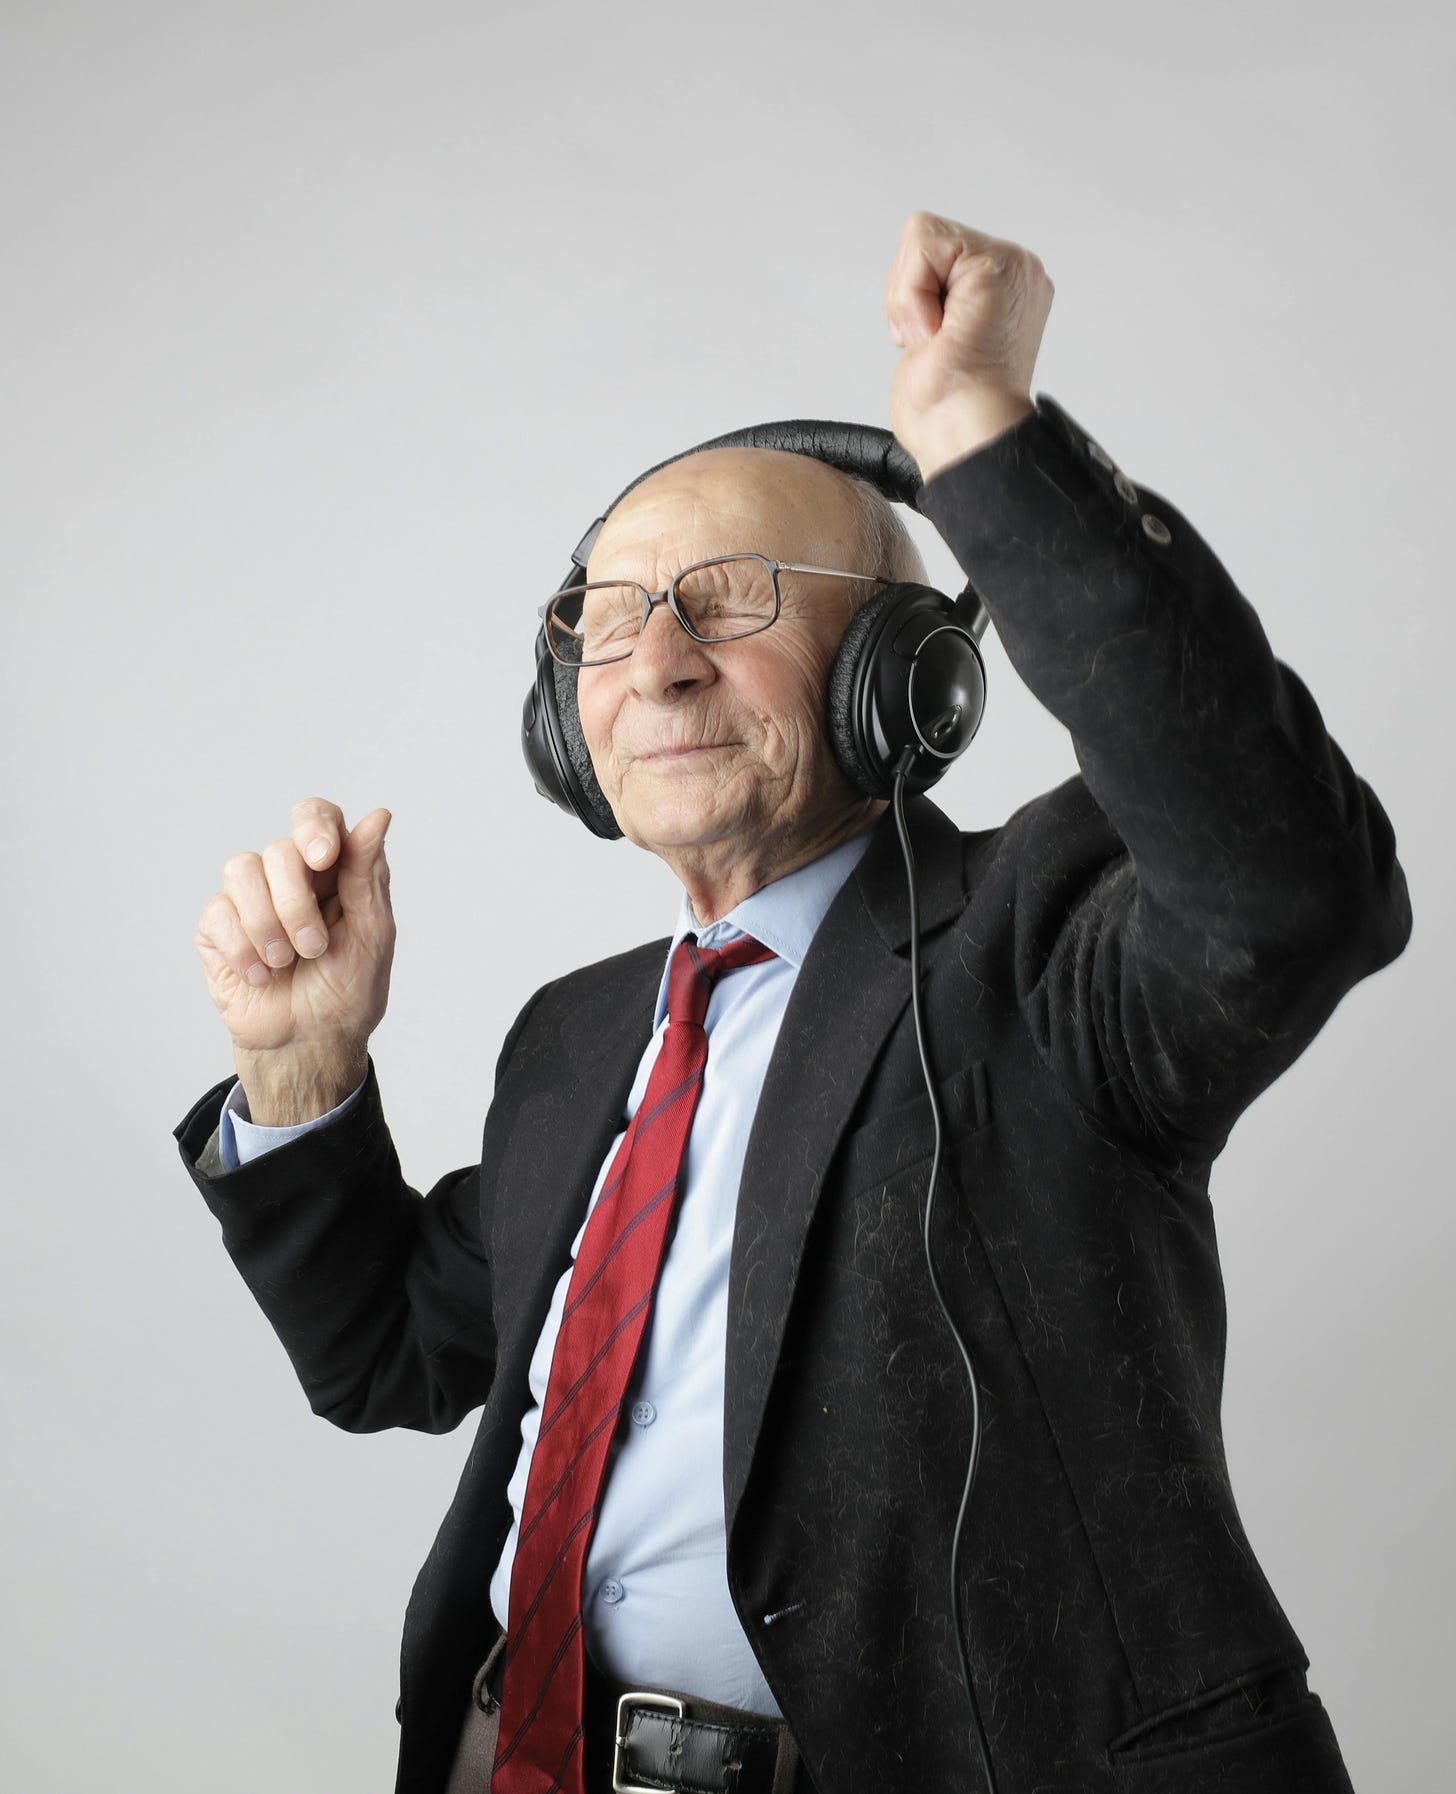 Man smiling and dancing in headphones